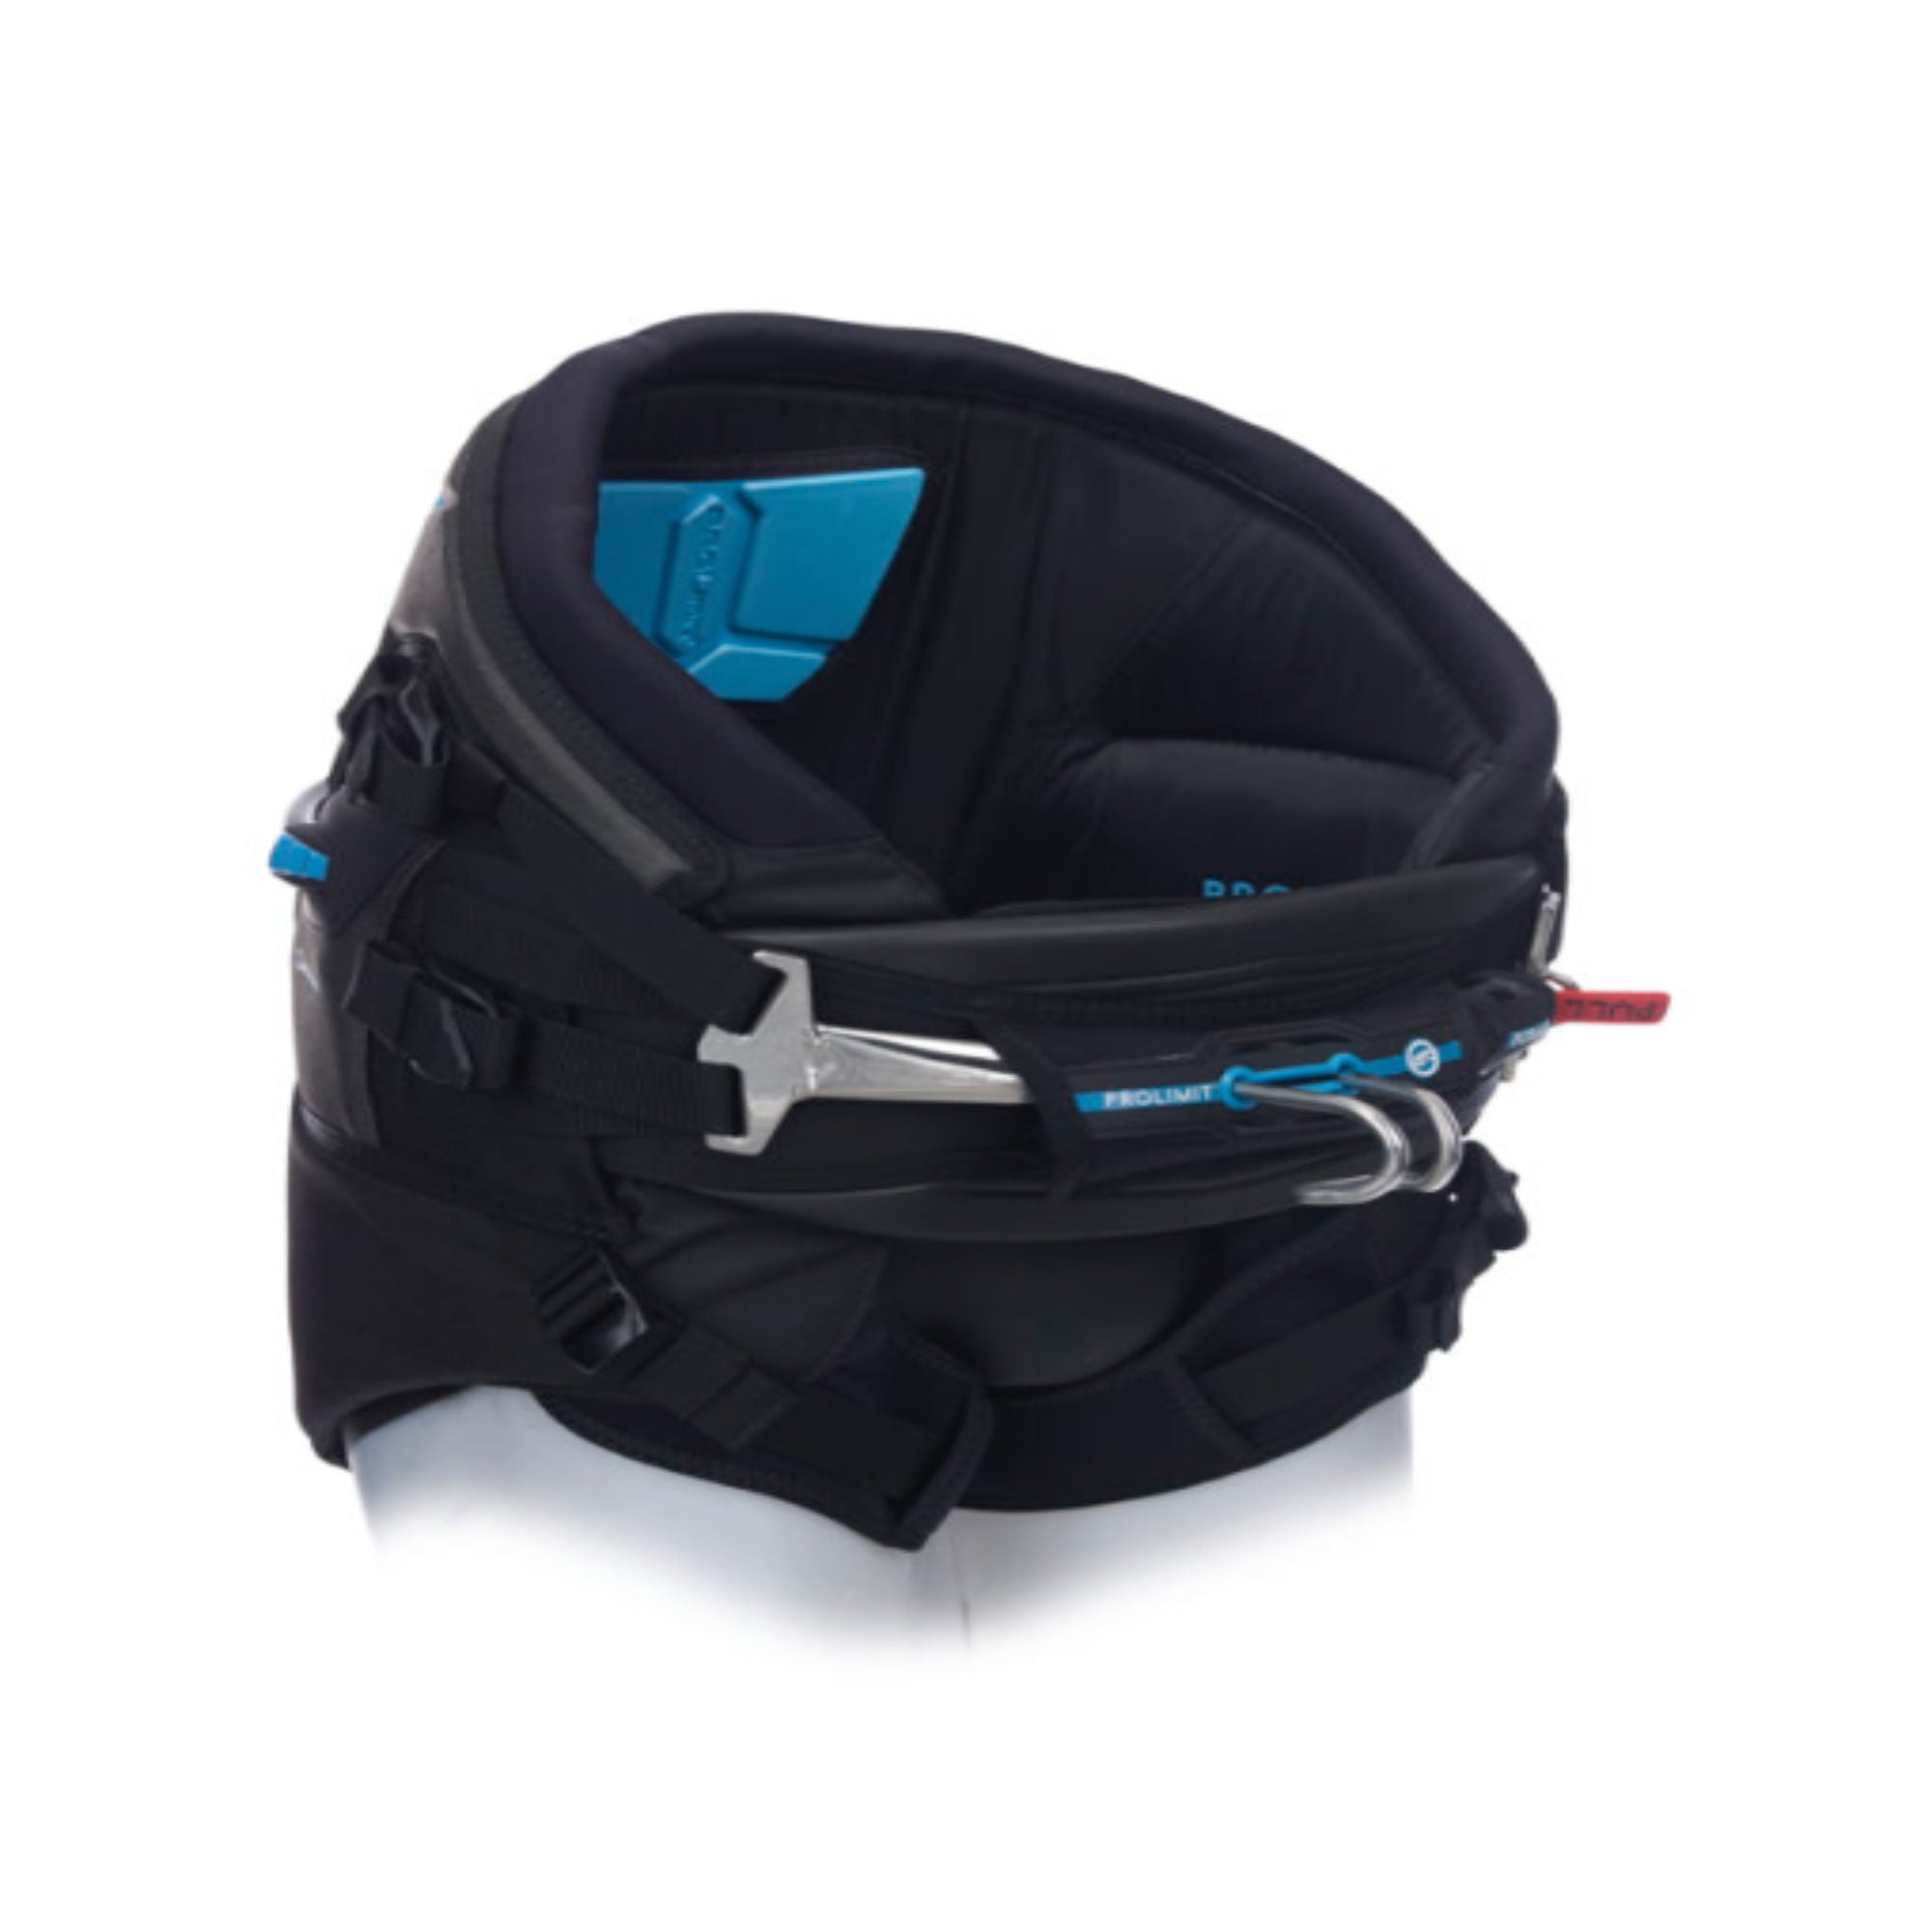 Prolimit Kite Seat Pro L schw-blau